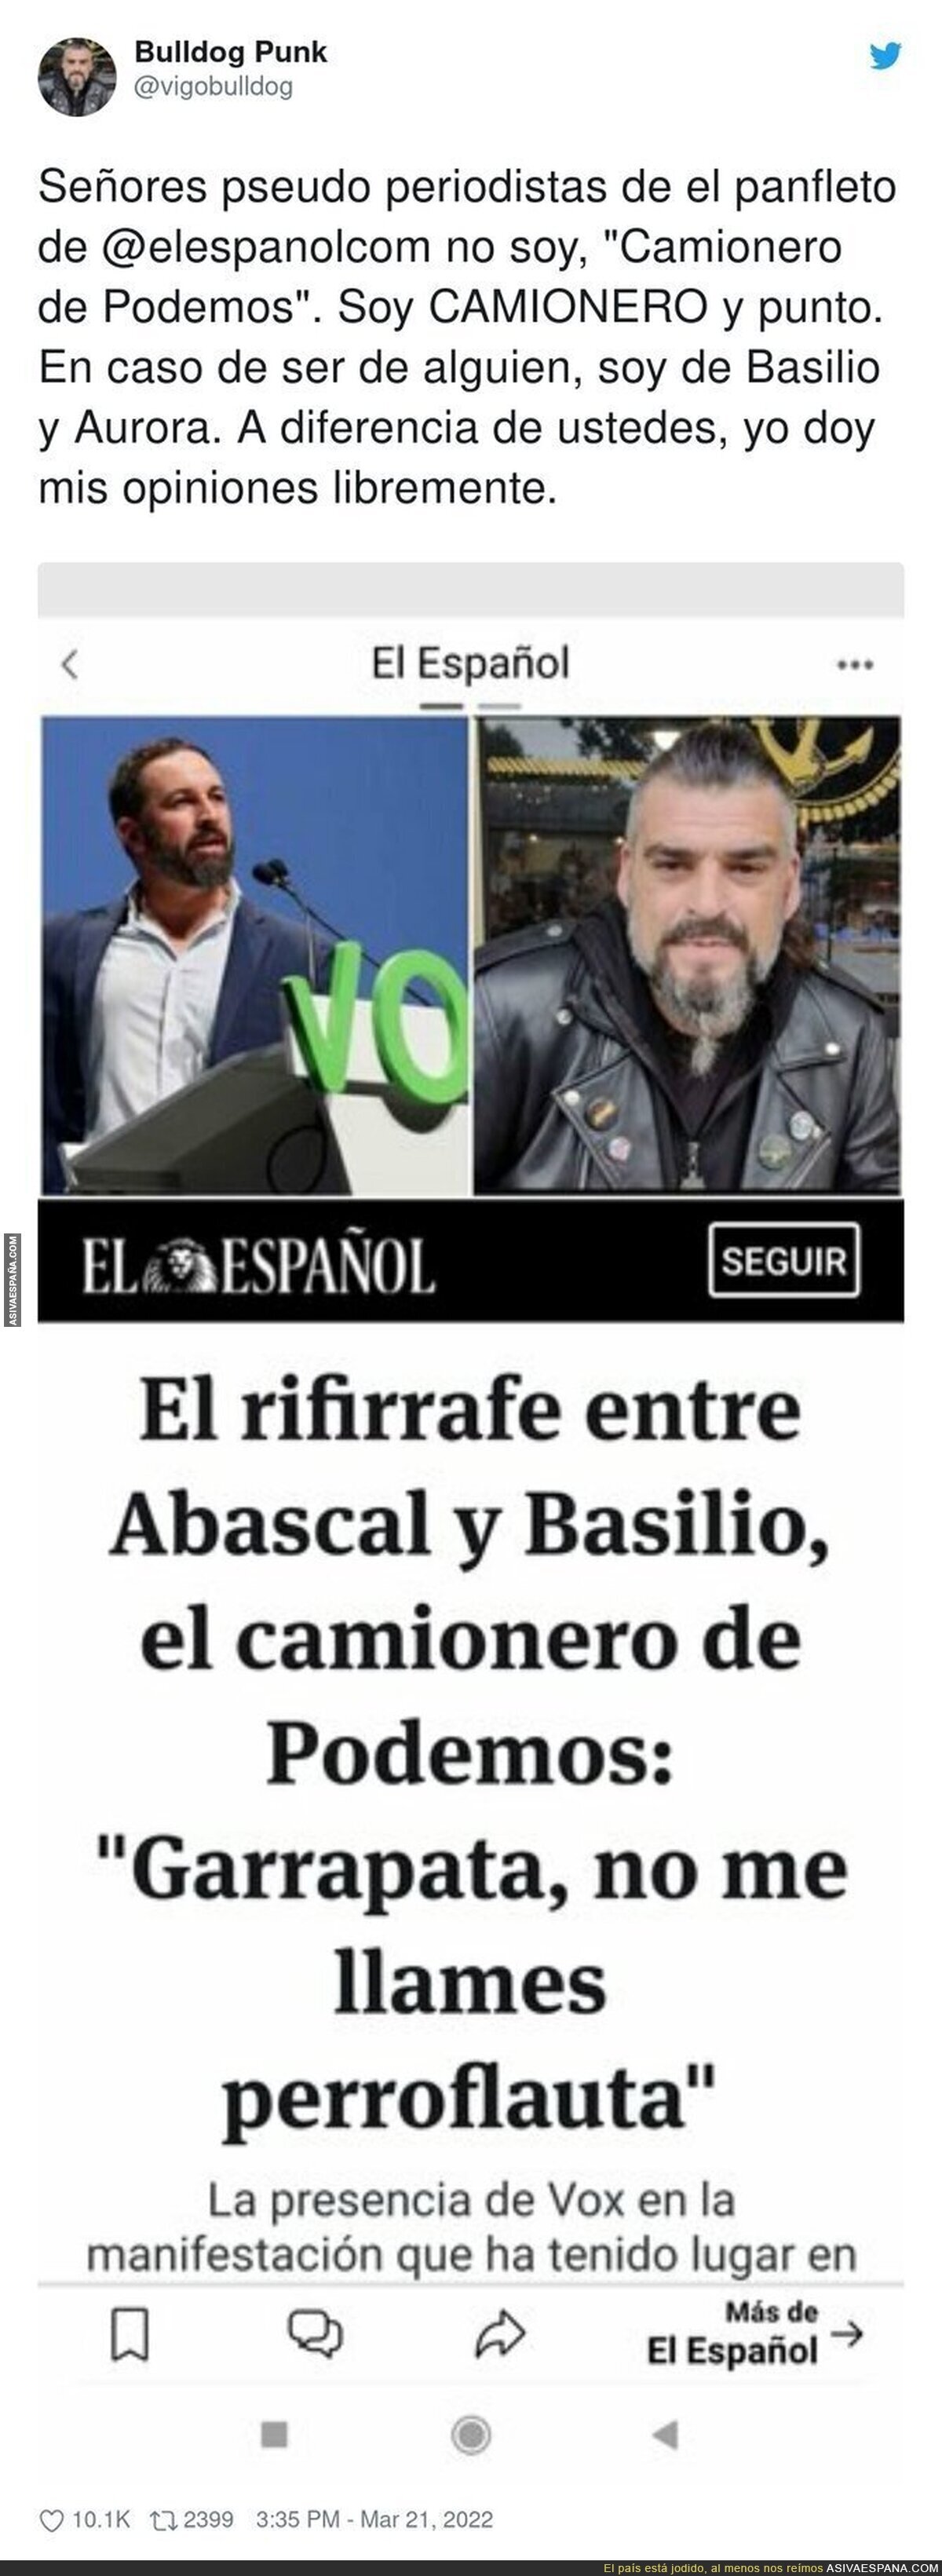 El famoso camionero que graba vídeos sobre actualidad política responde al periodismo basura de 'El Español'